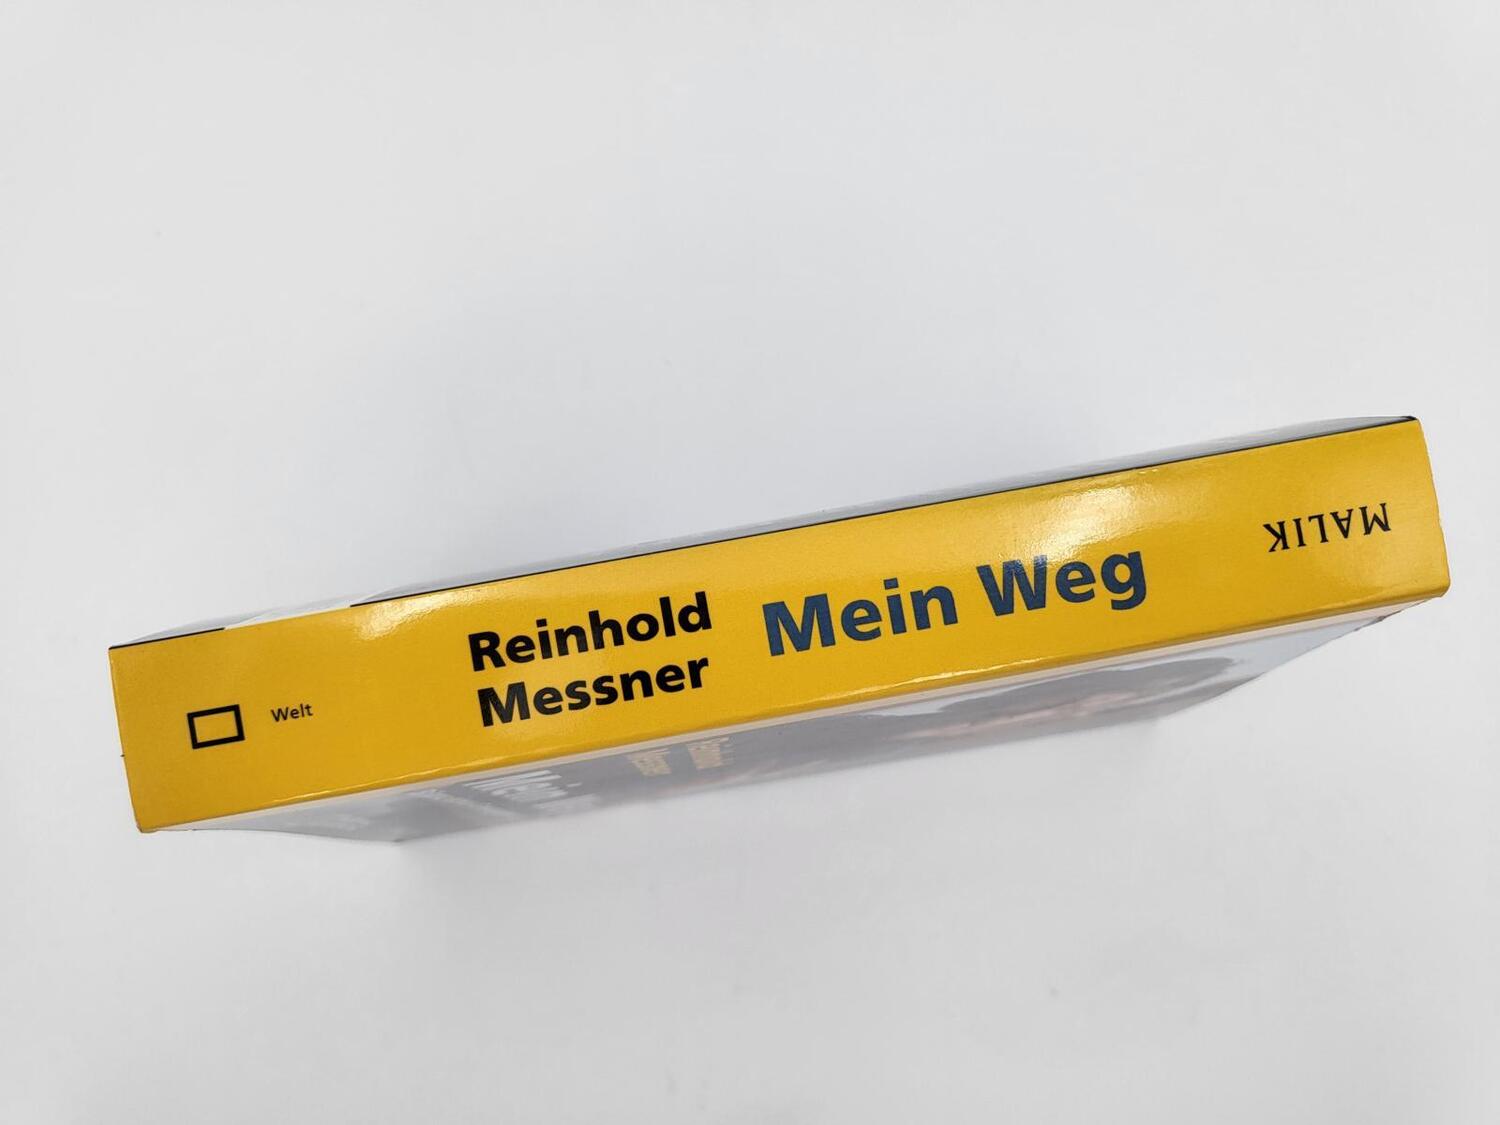 Bild: 9783492406208 | Mein Weg | Bilanz eines Grenzgängers | Reinhold Messner | Taschenbuch